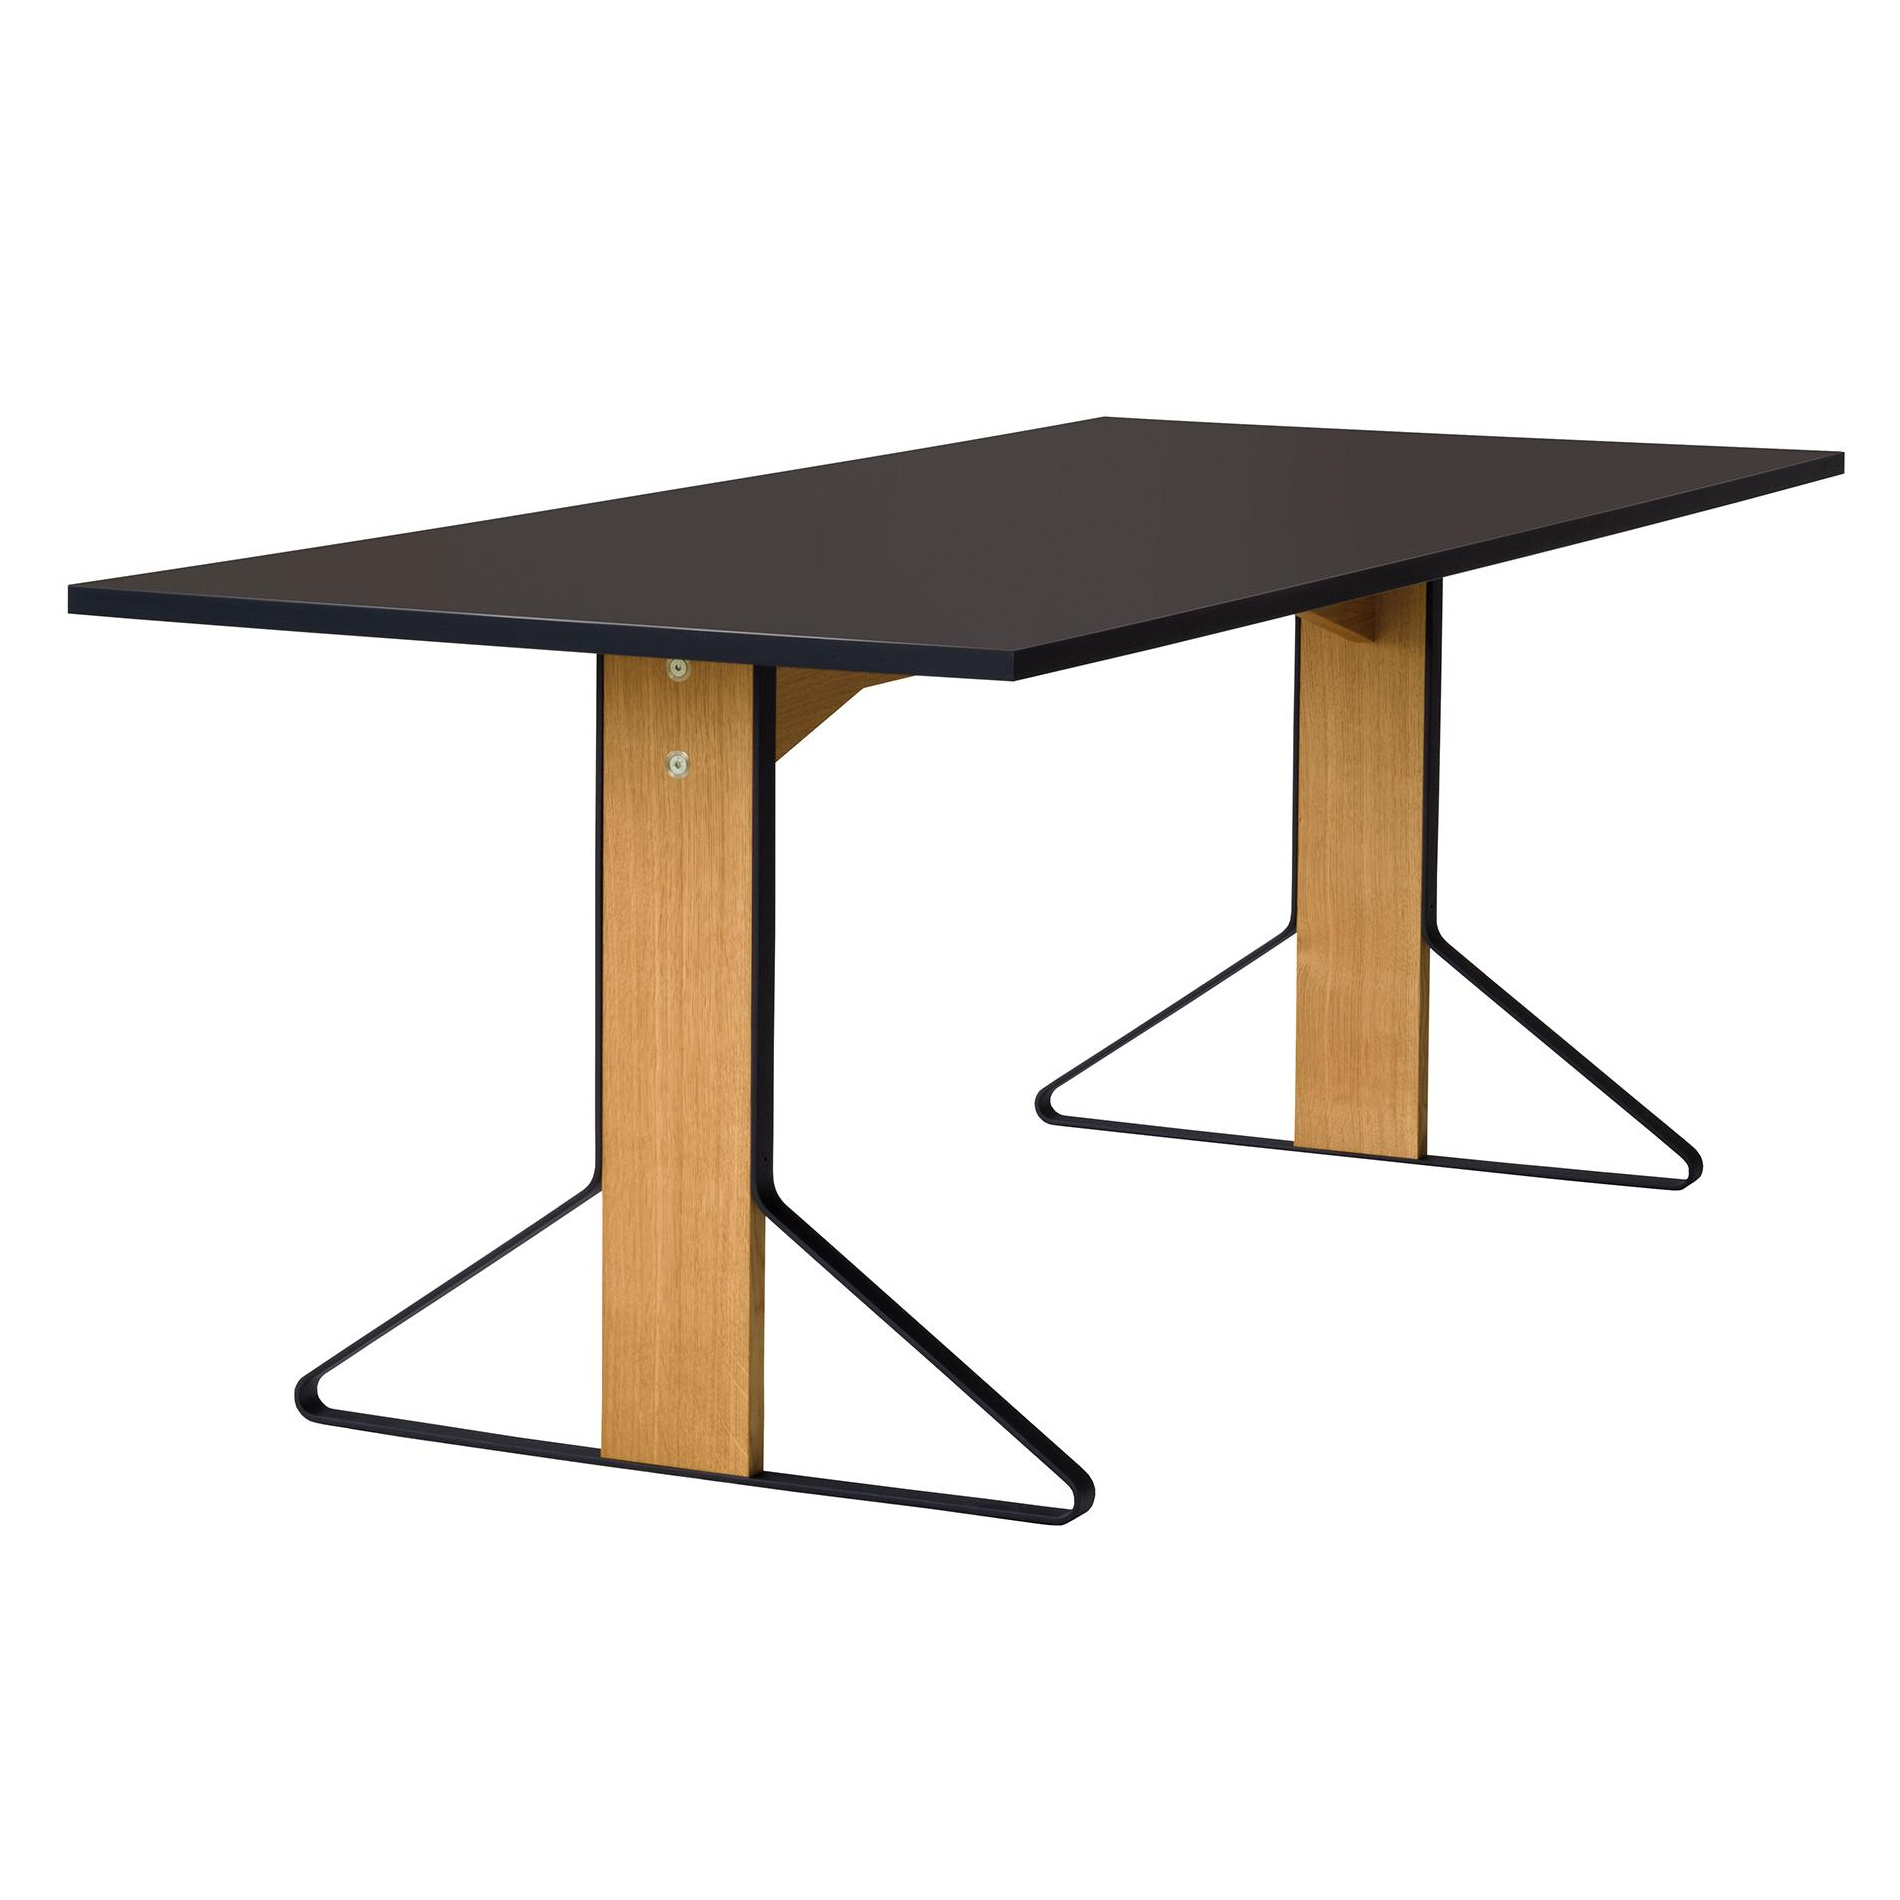 Artek - Table Kaari REB012 chne laqu clair 160x80cm - noir, naturel/plateau de table en linolum/pieds en chne laqu claire/structure acier re